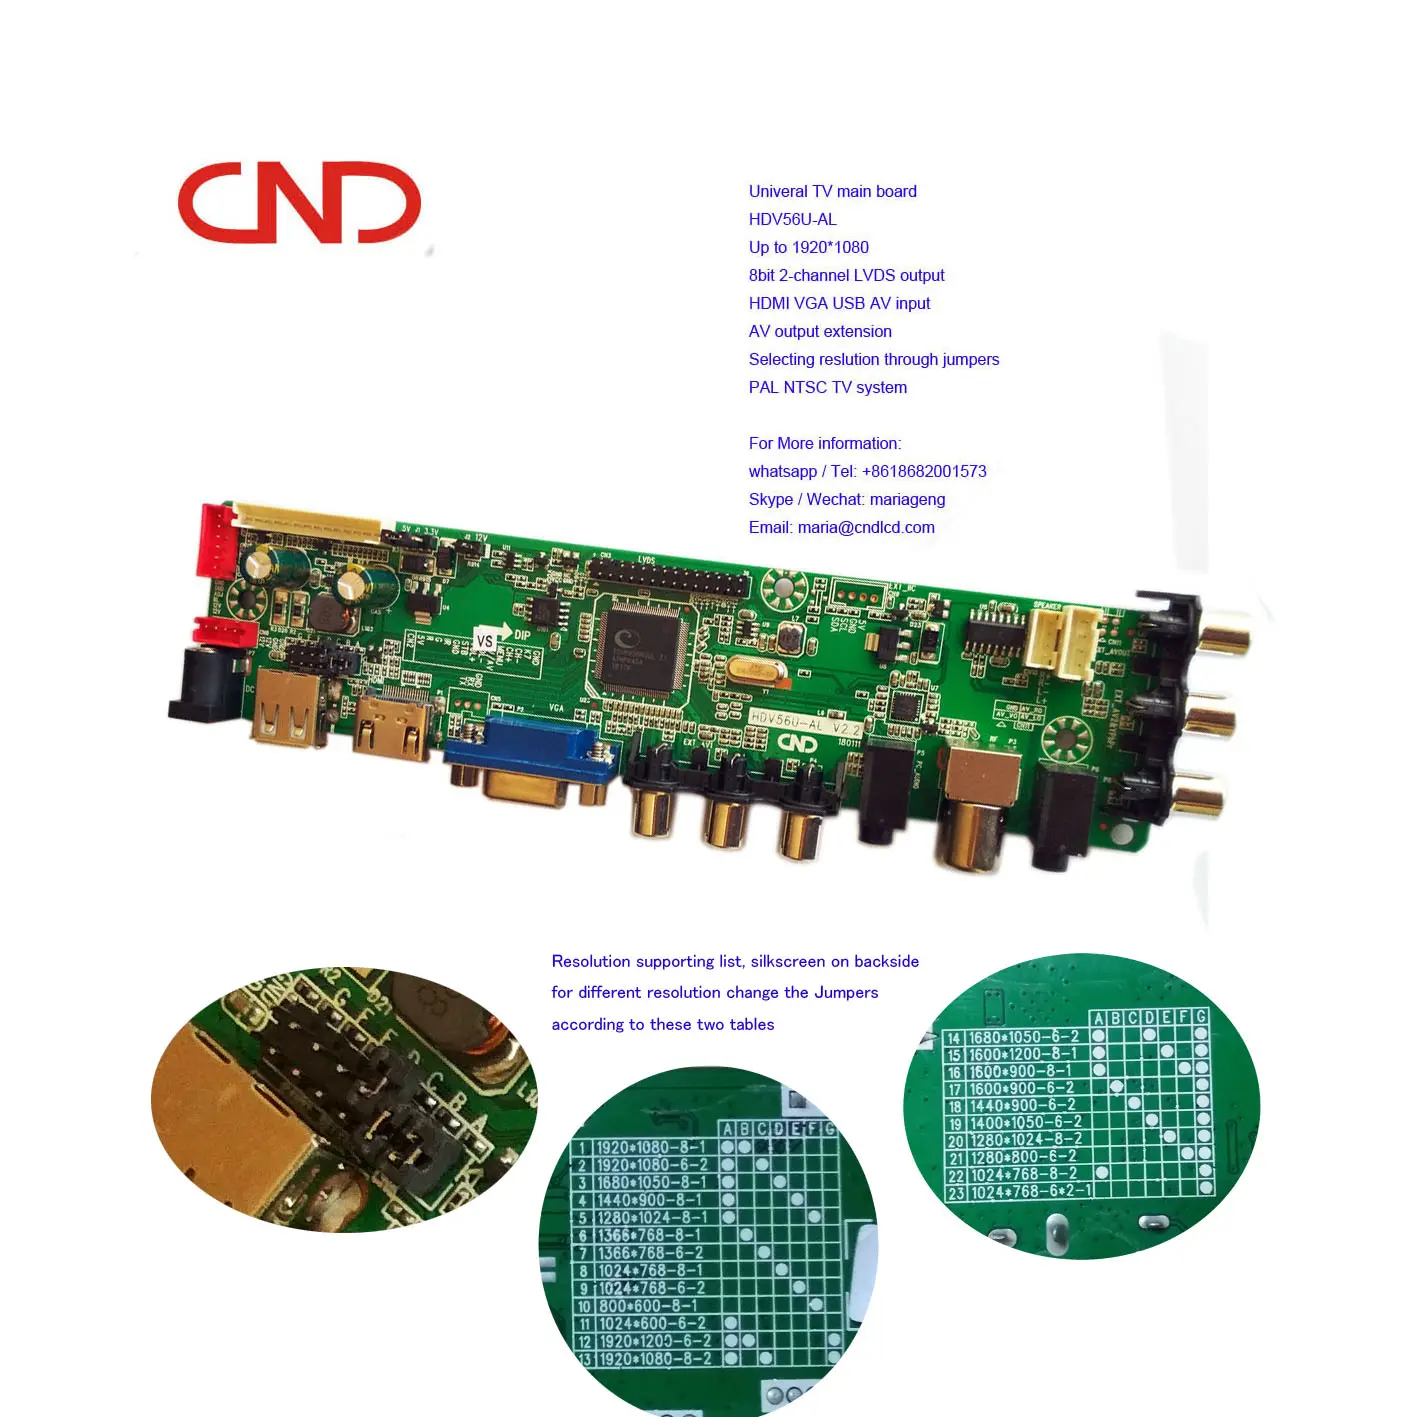 HDV56U-AS DS-V56 HDV56U-AL Universale 2AV PAL NTSC 1080P TV LED pezzi di ricambio principale driver del controller madre scheda di sintonizzazione bordo